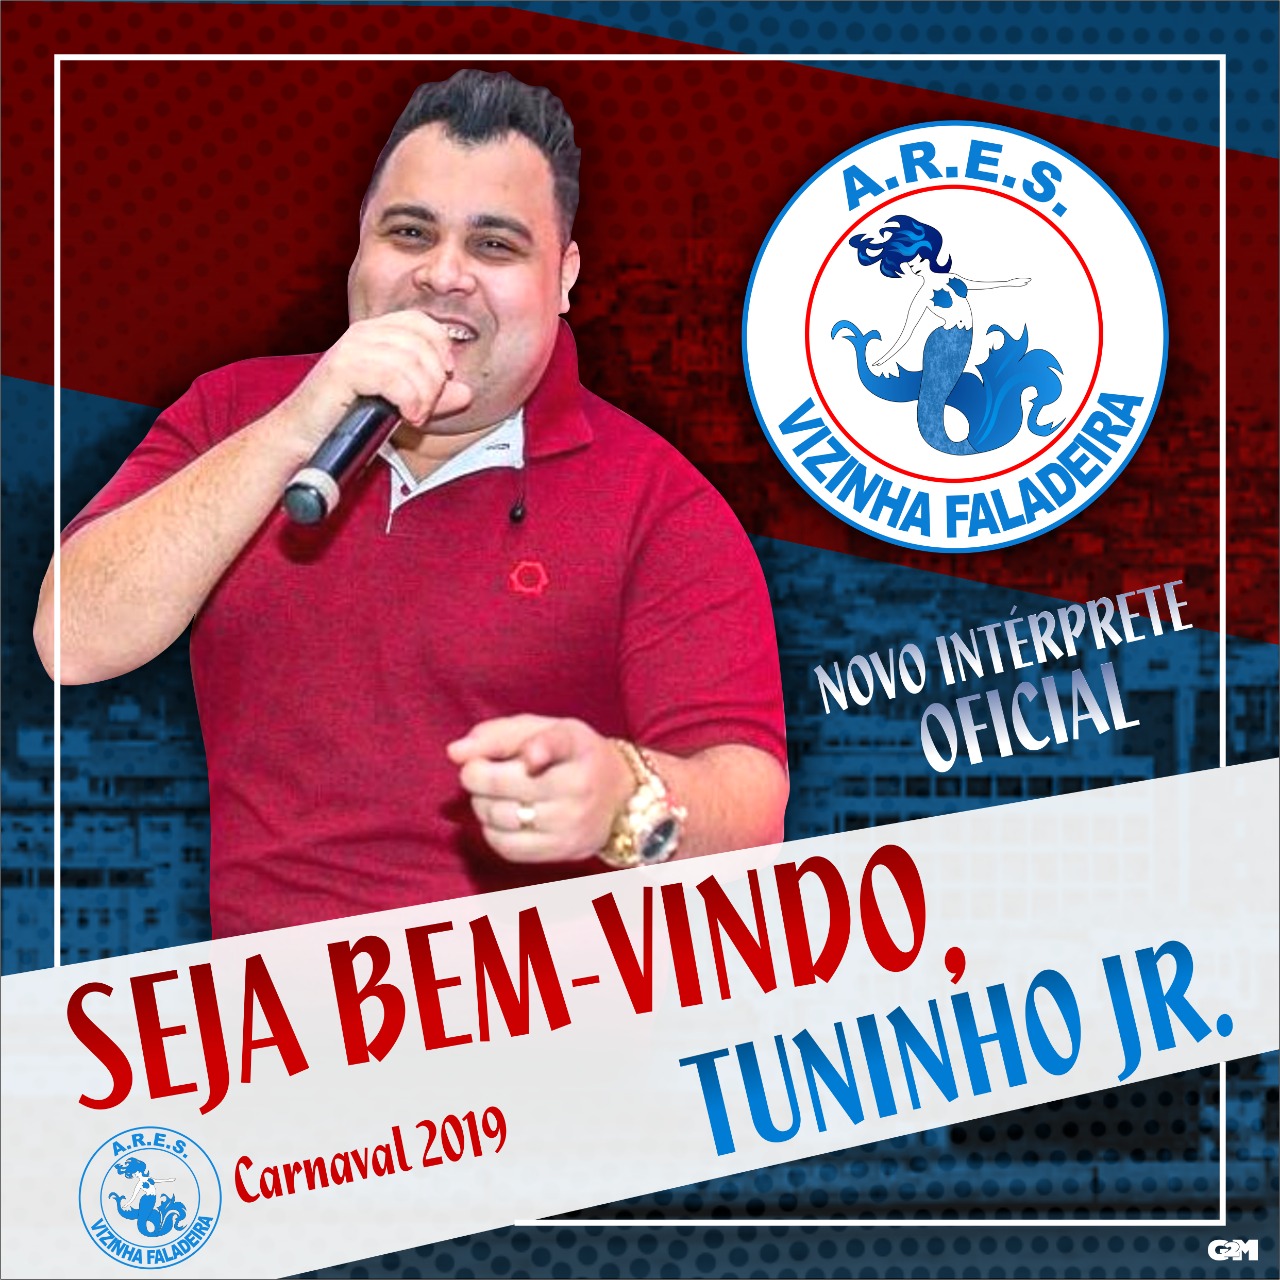 Tuninho Júnior é o novo intérprete da Vizinha Faladeira. Foto: Divulgação